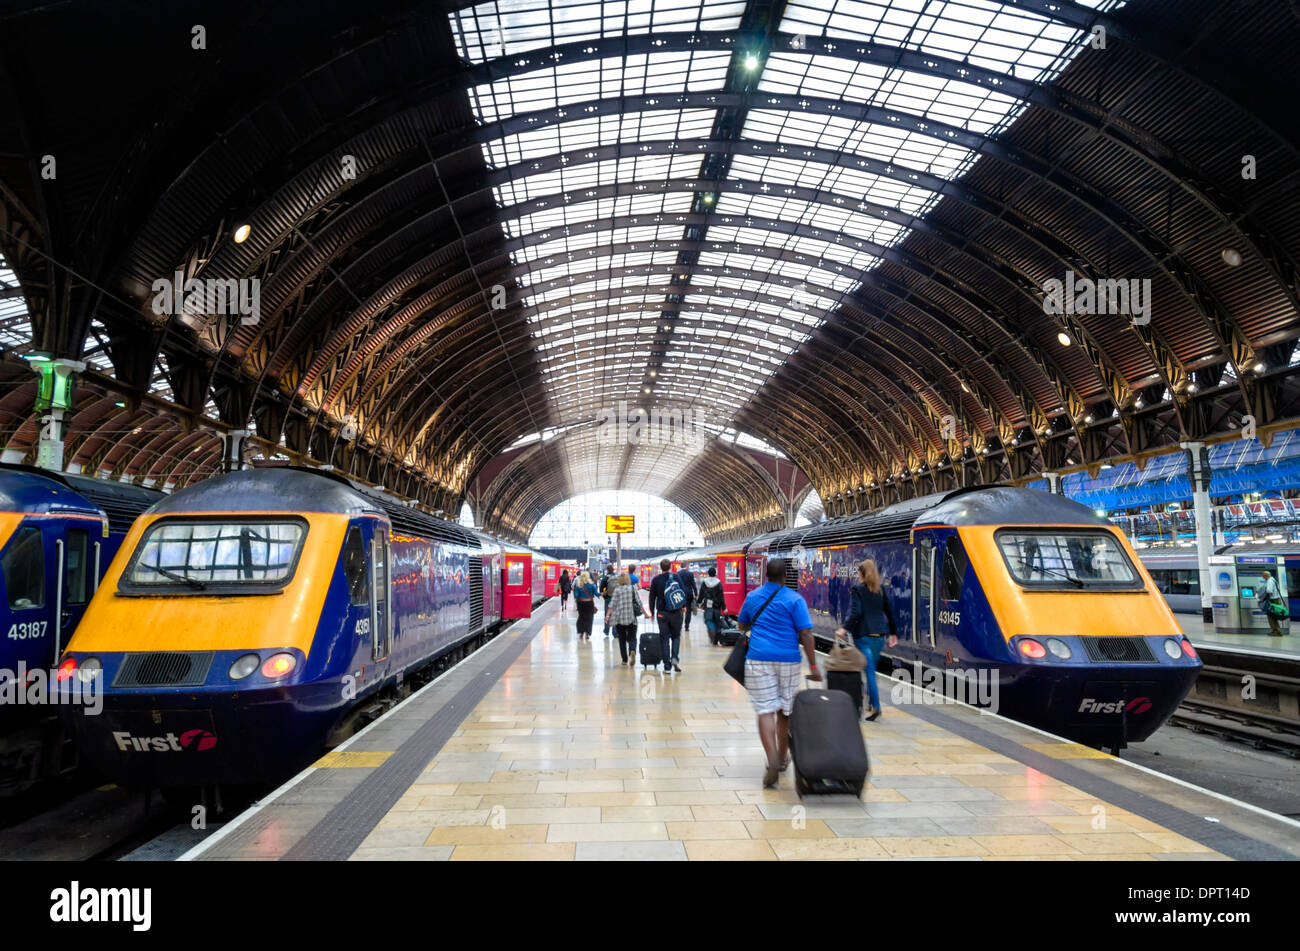 La estación de Paddington de Londres con su gran techo curvo y trenes de alta velocidad Foto de stock